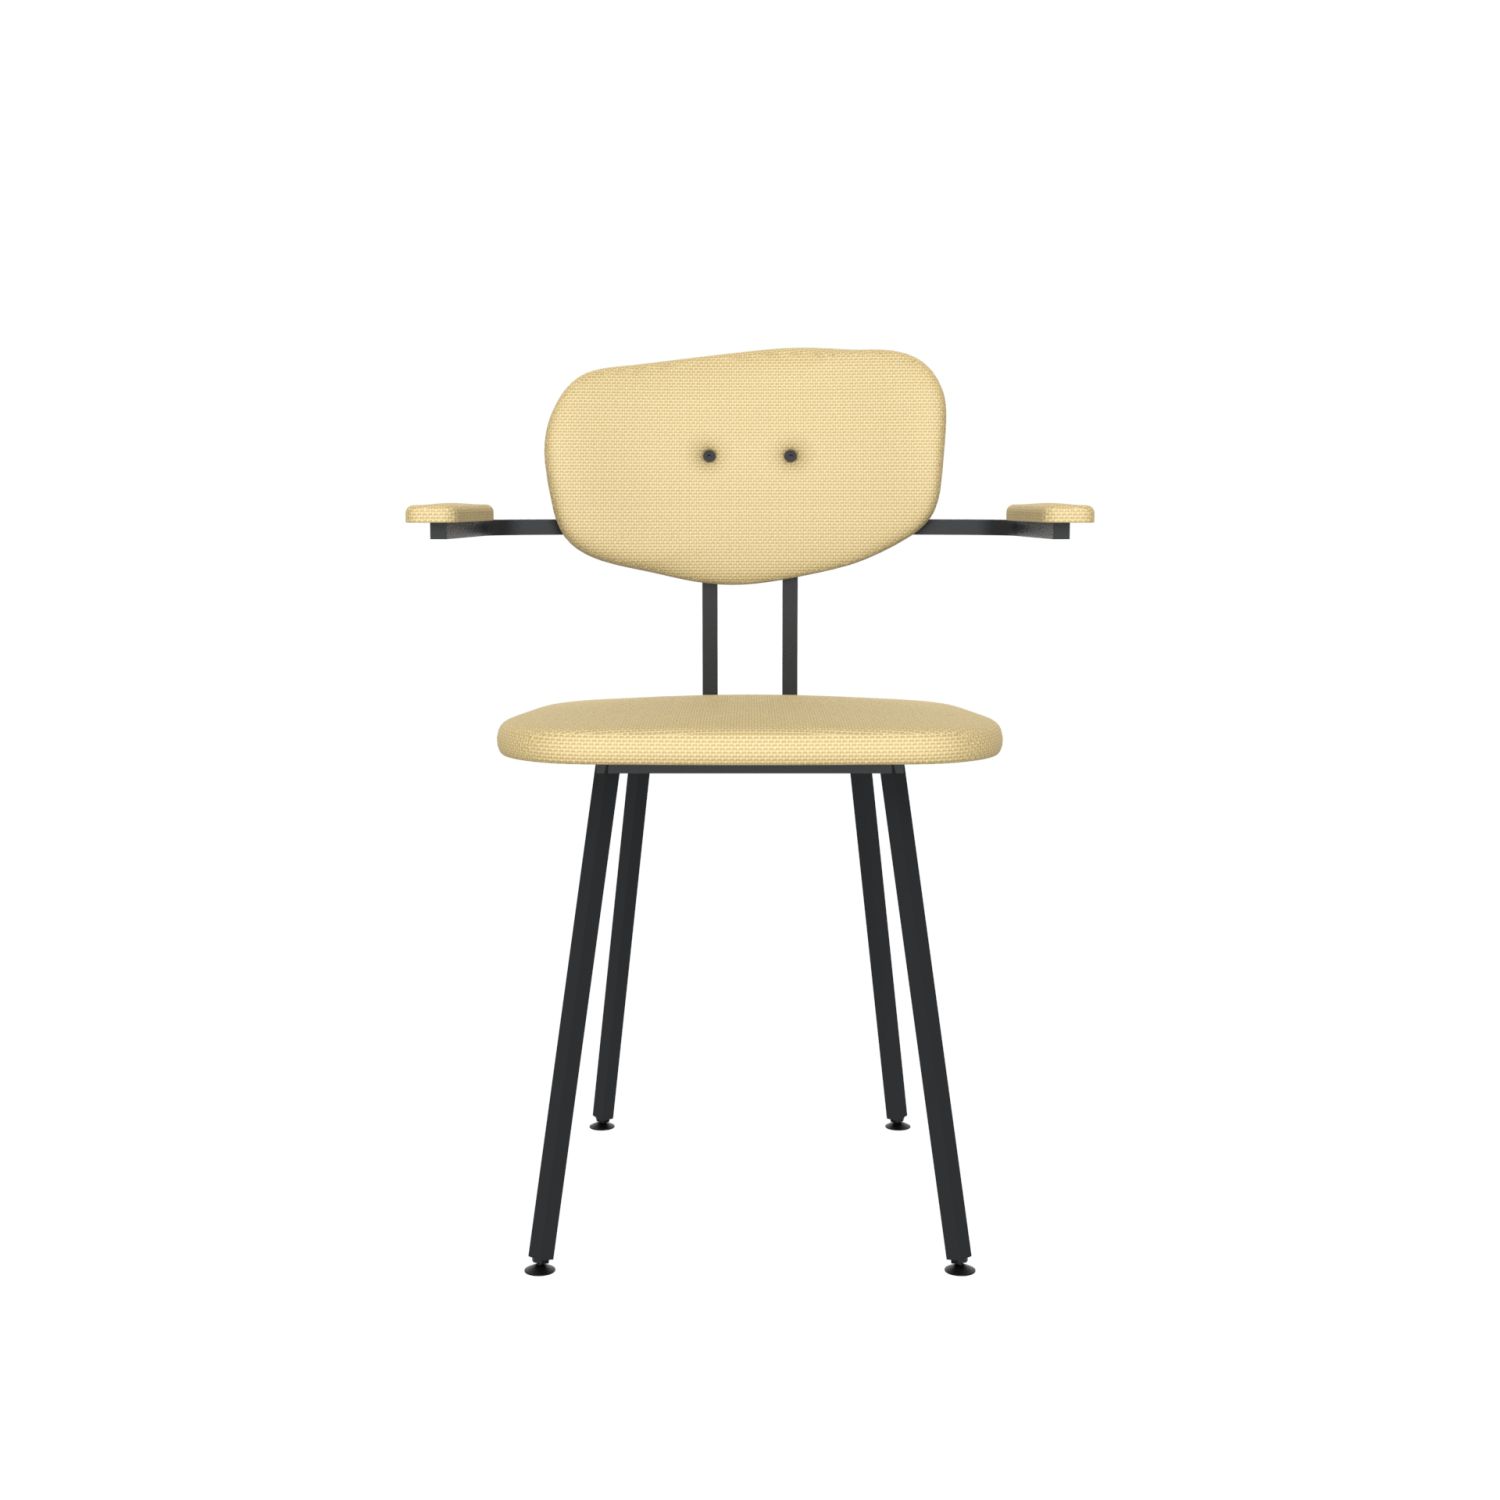 lensvelt maarten baas chair 102 not stackable with armrests backrest c light brown 141 black ral9005 hard leg ends